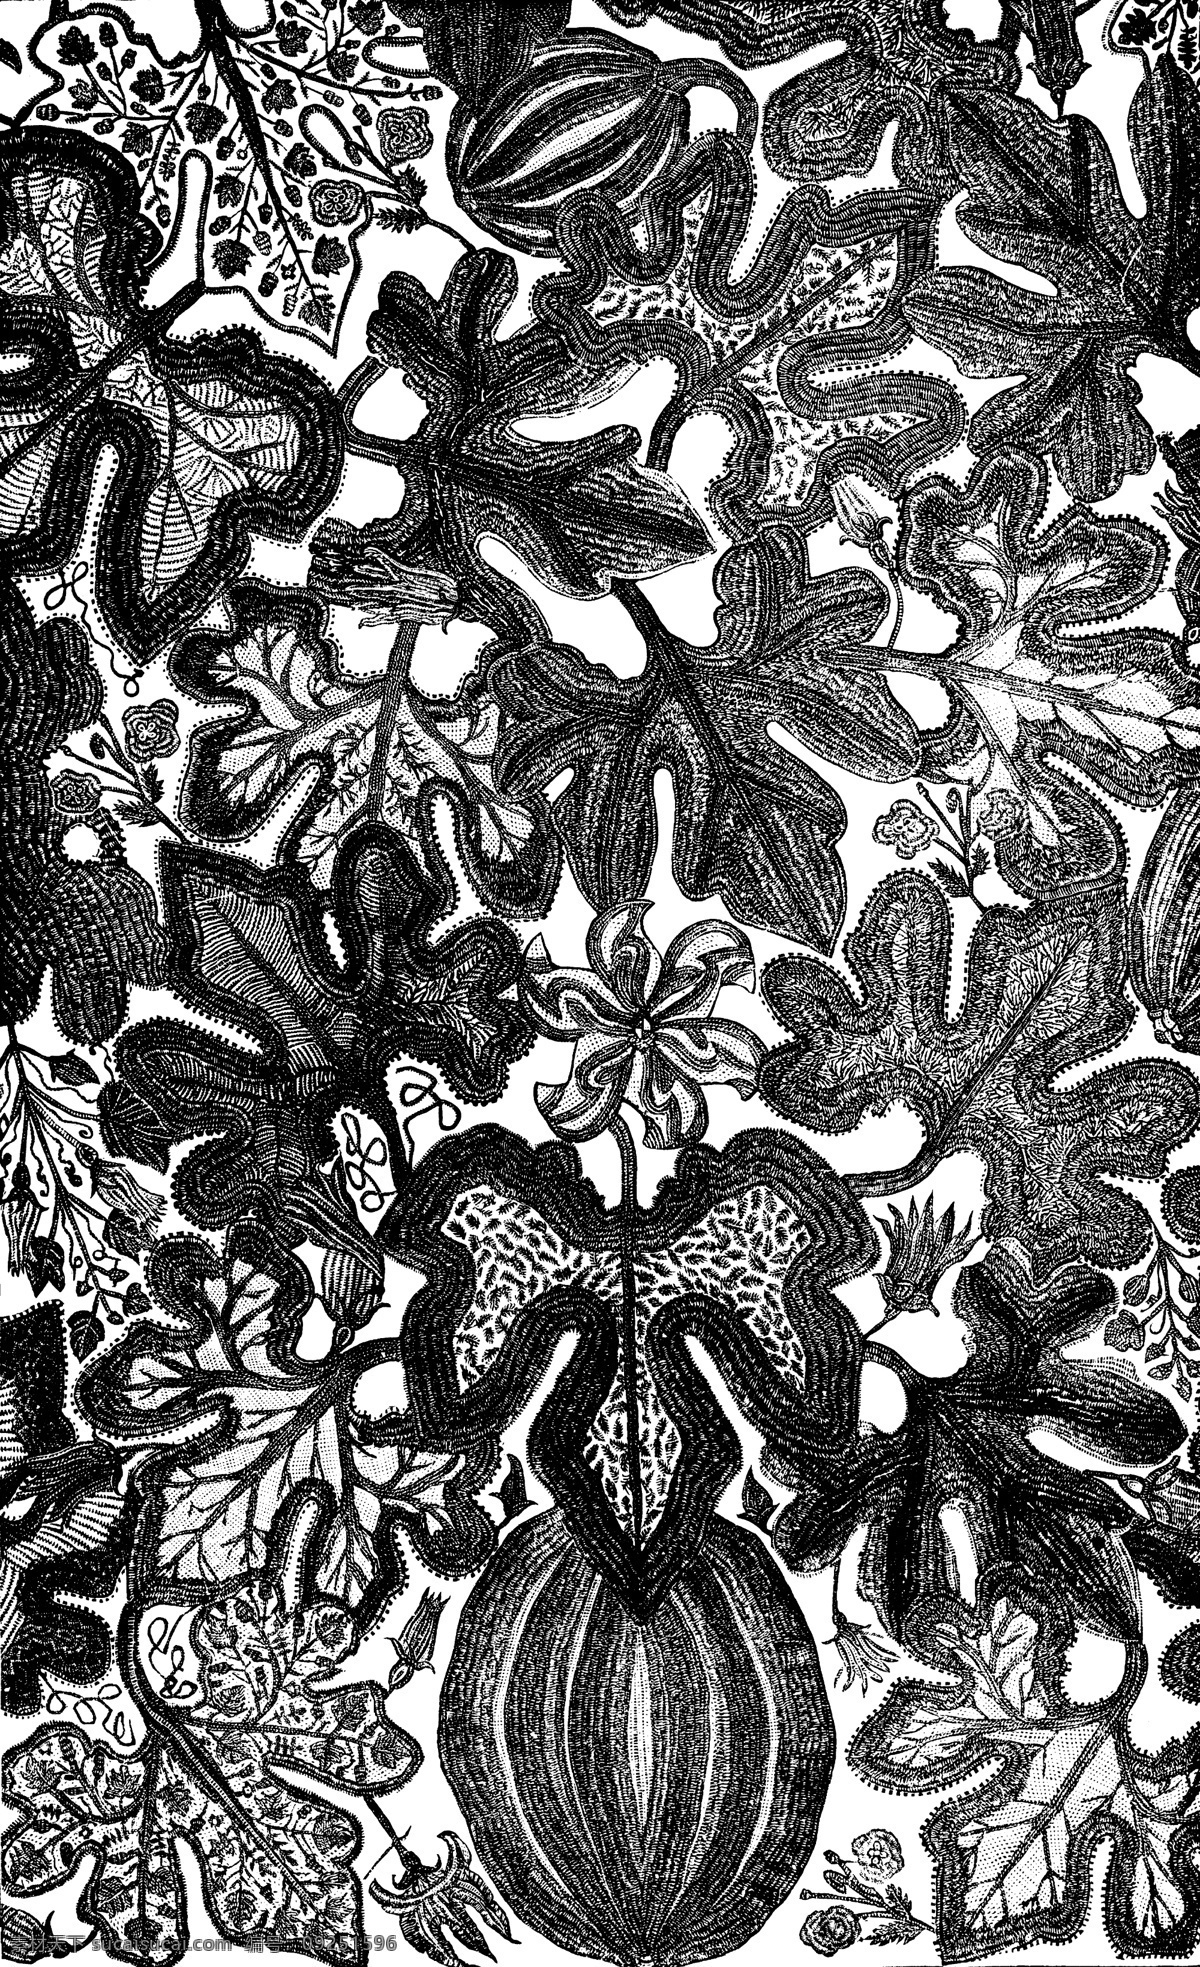 黑白 花边 植物 纹样 线条 花卉 服装边饰 刺绣图案 传统文化 文化艺术